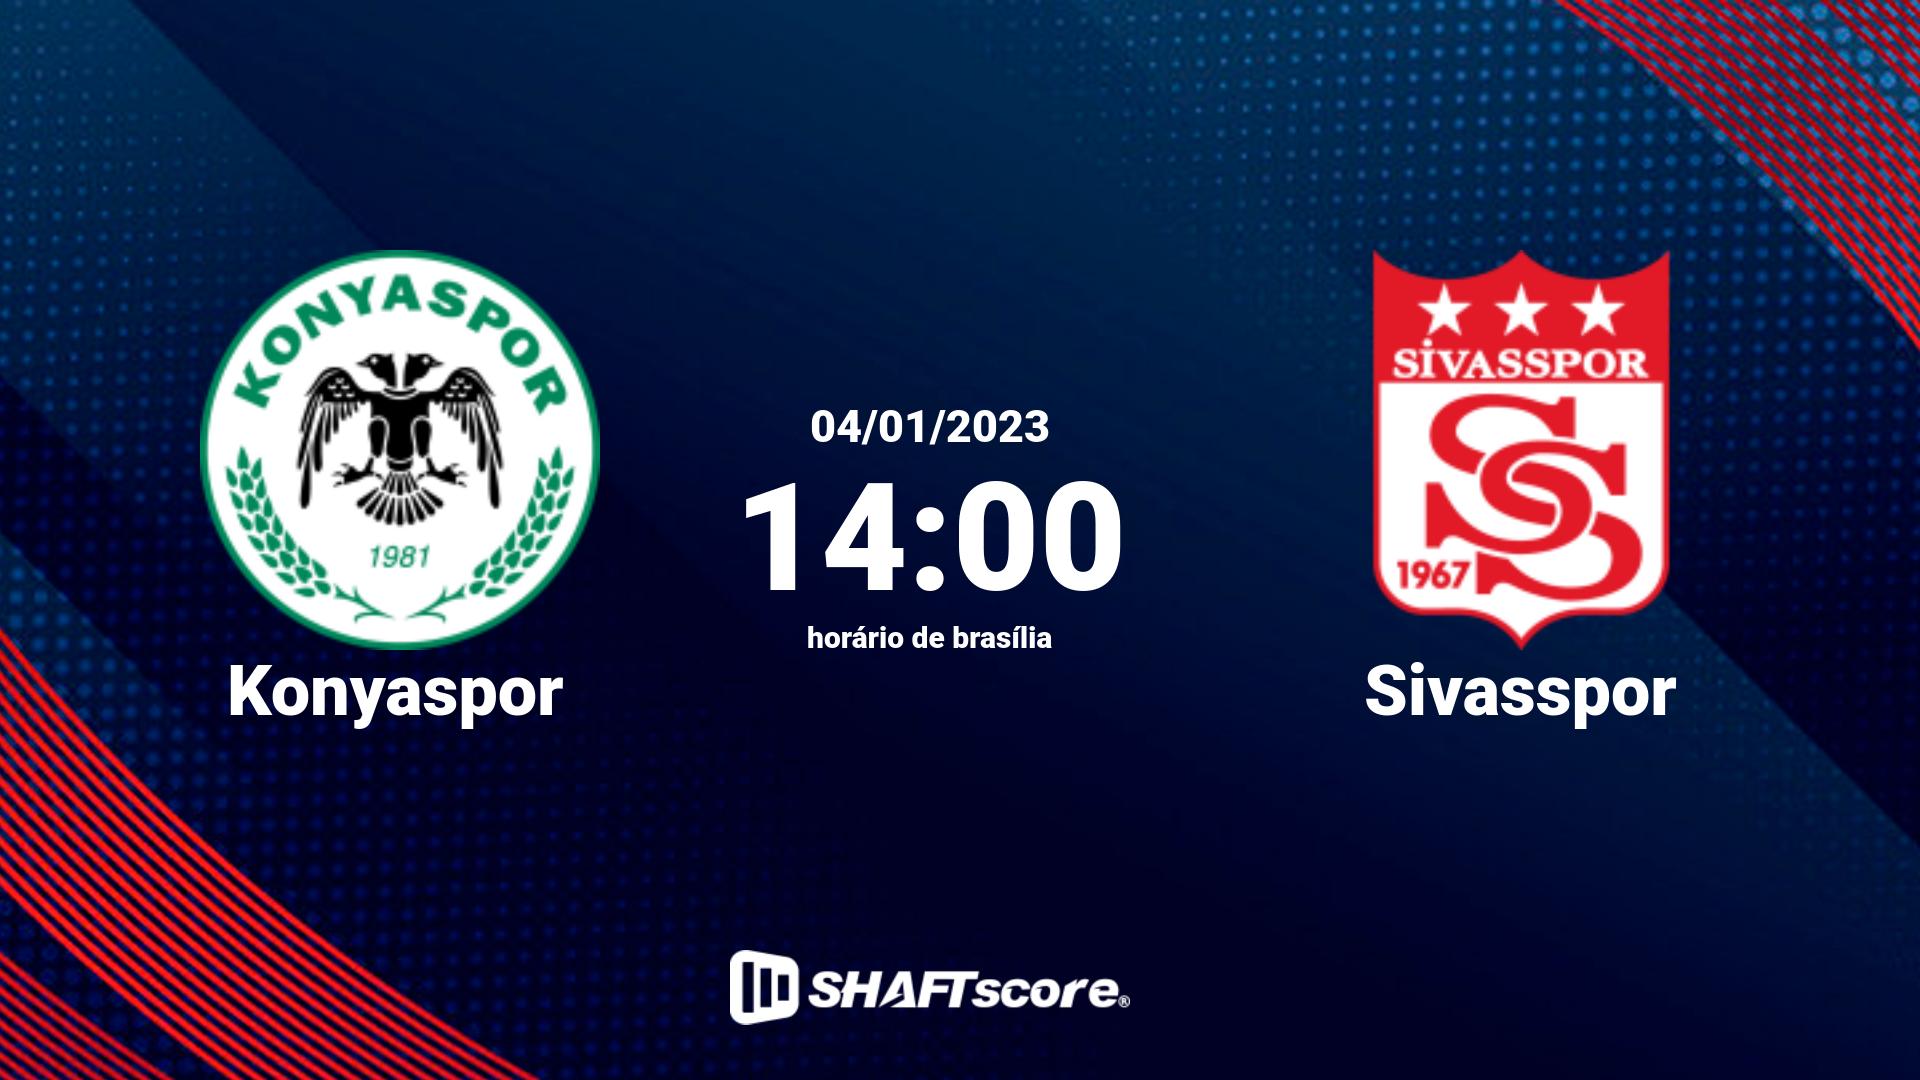 Estatísticas do jogo Konyaspor vs Sivasspor 04.01 14:00